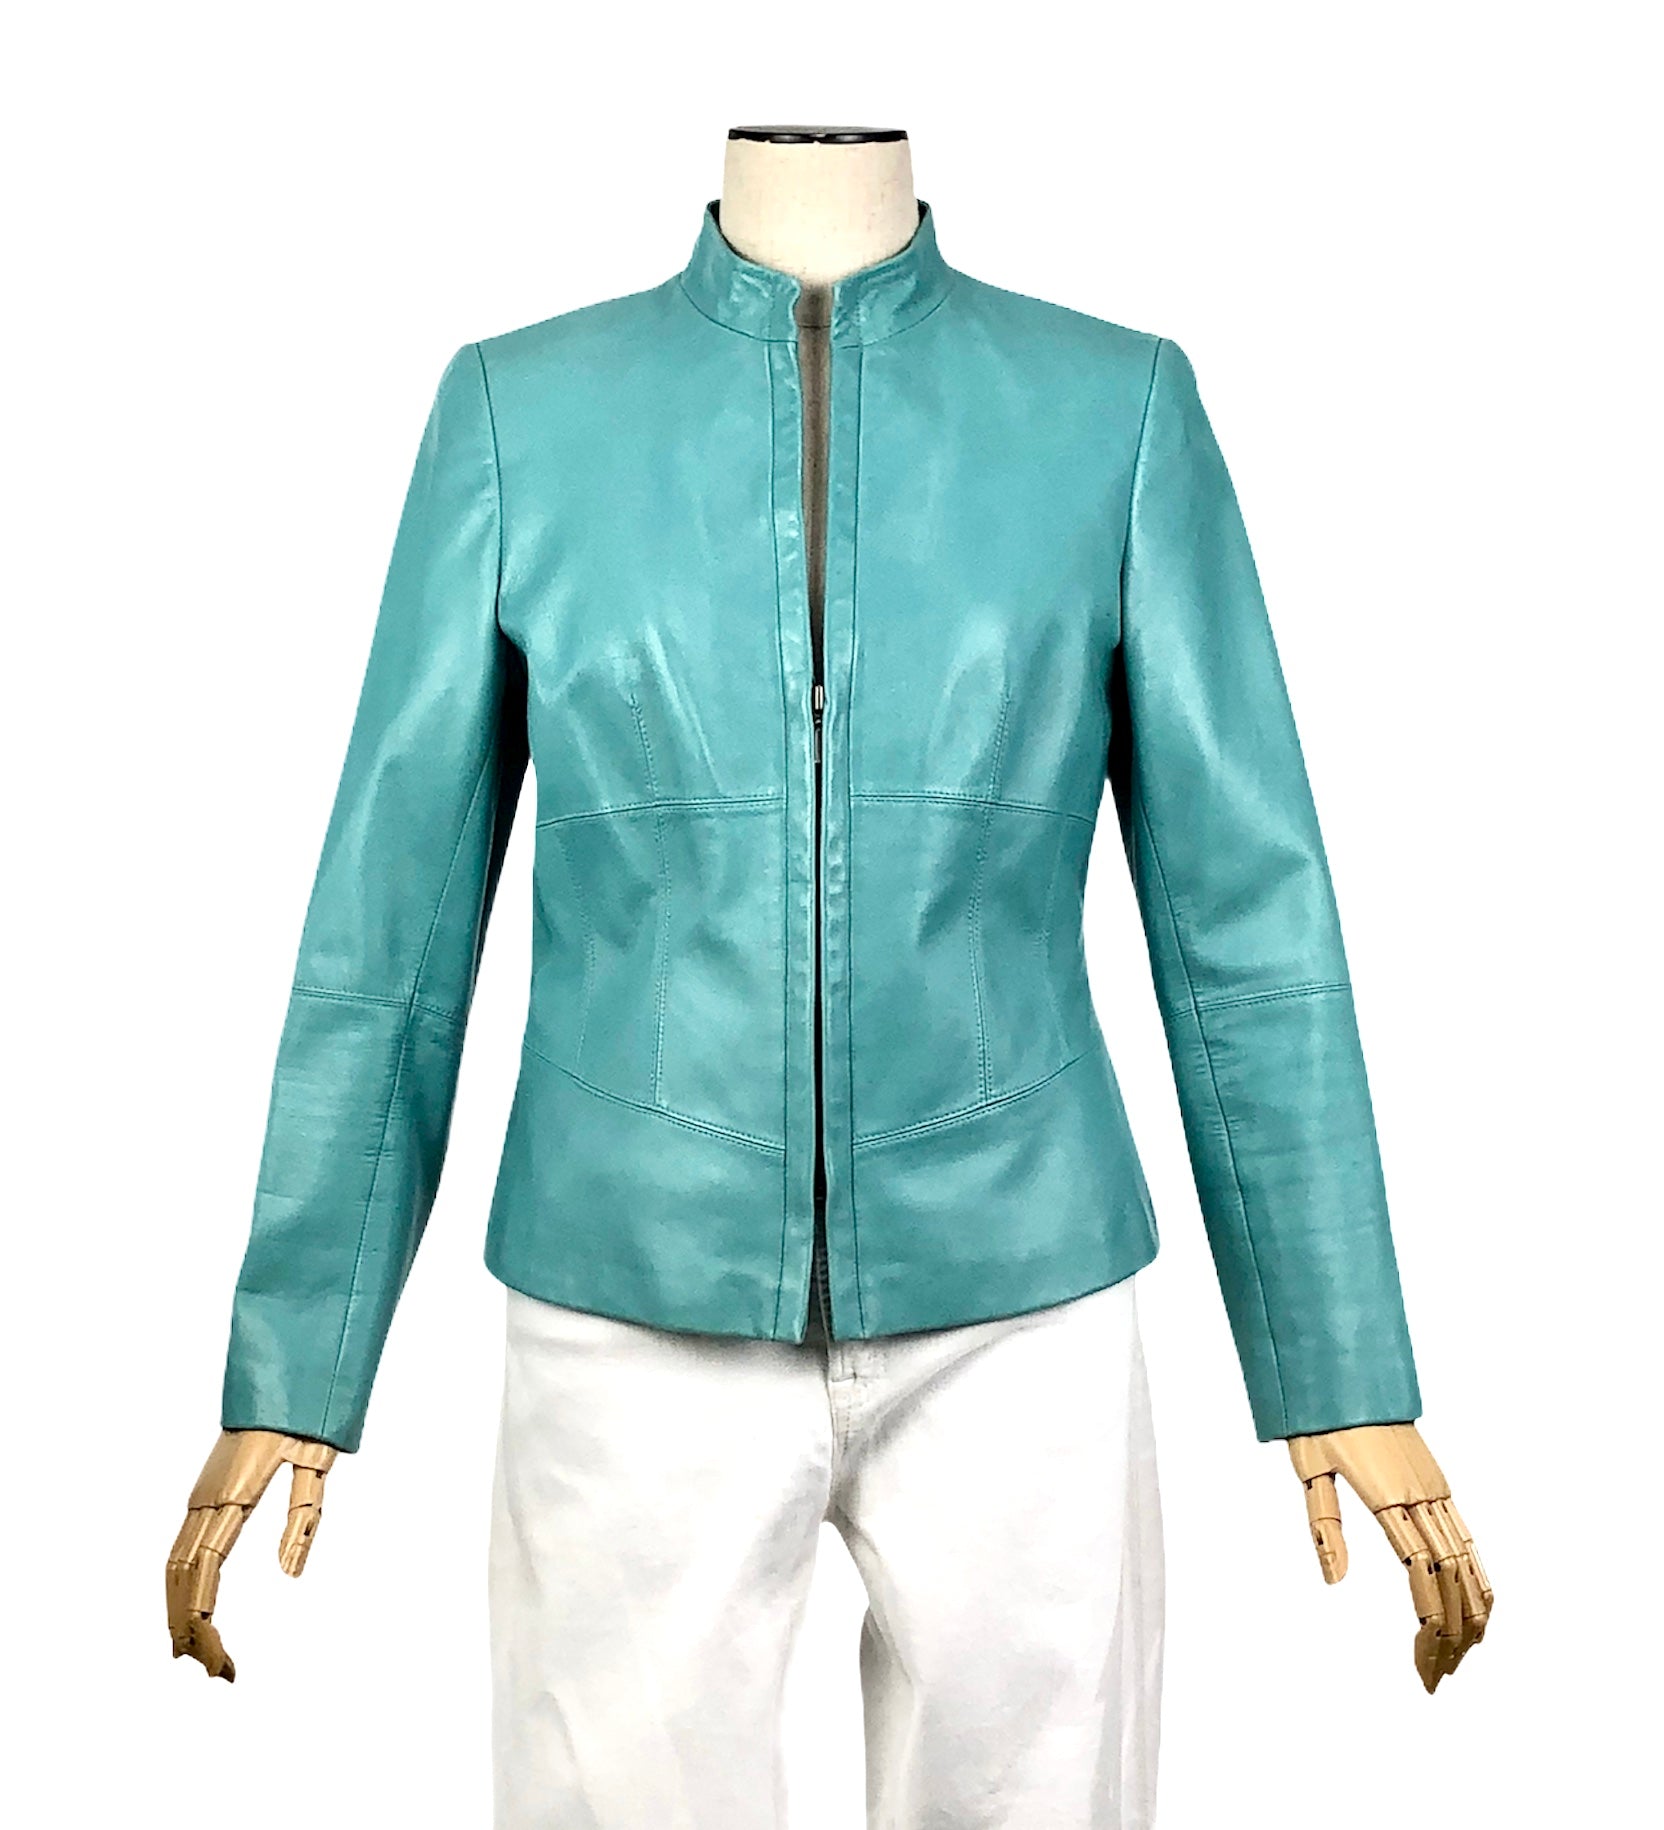 Turquoise Leather Moto Jacket | Size 4 Petite